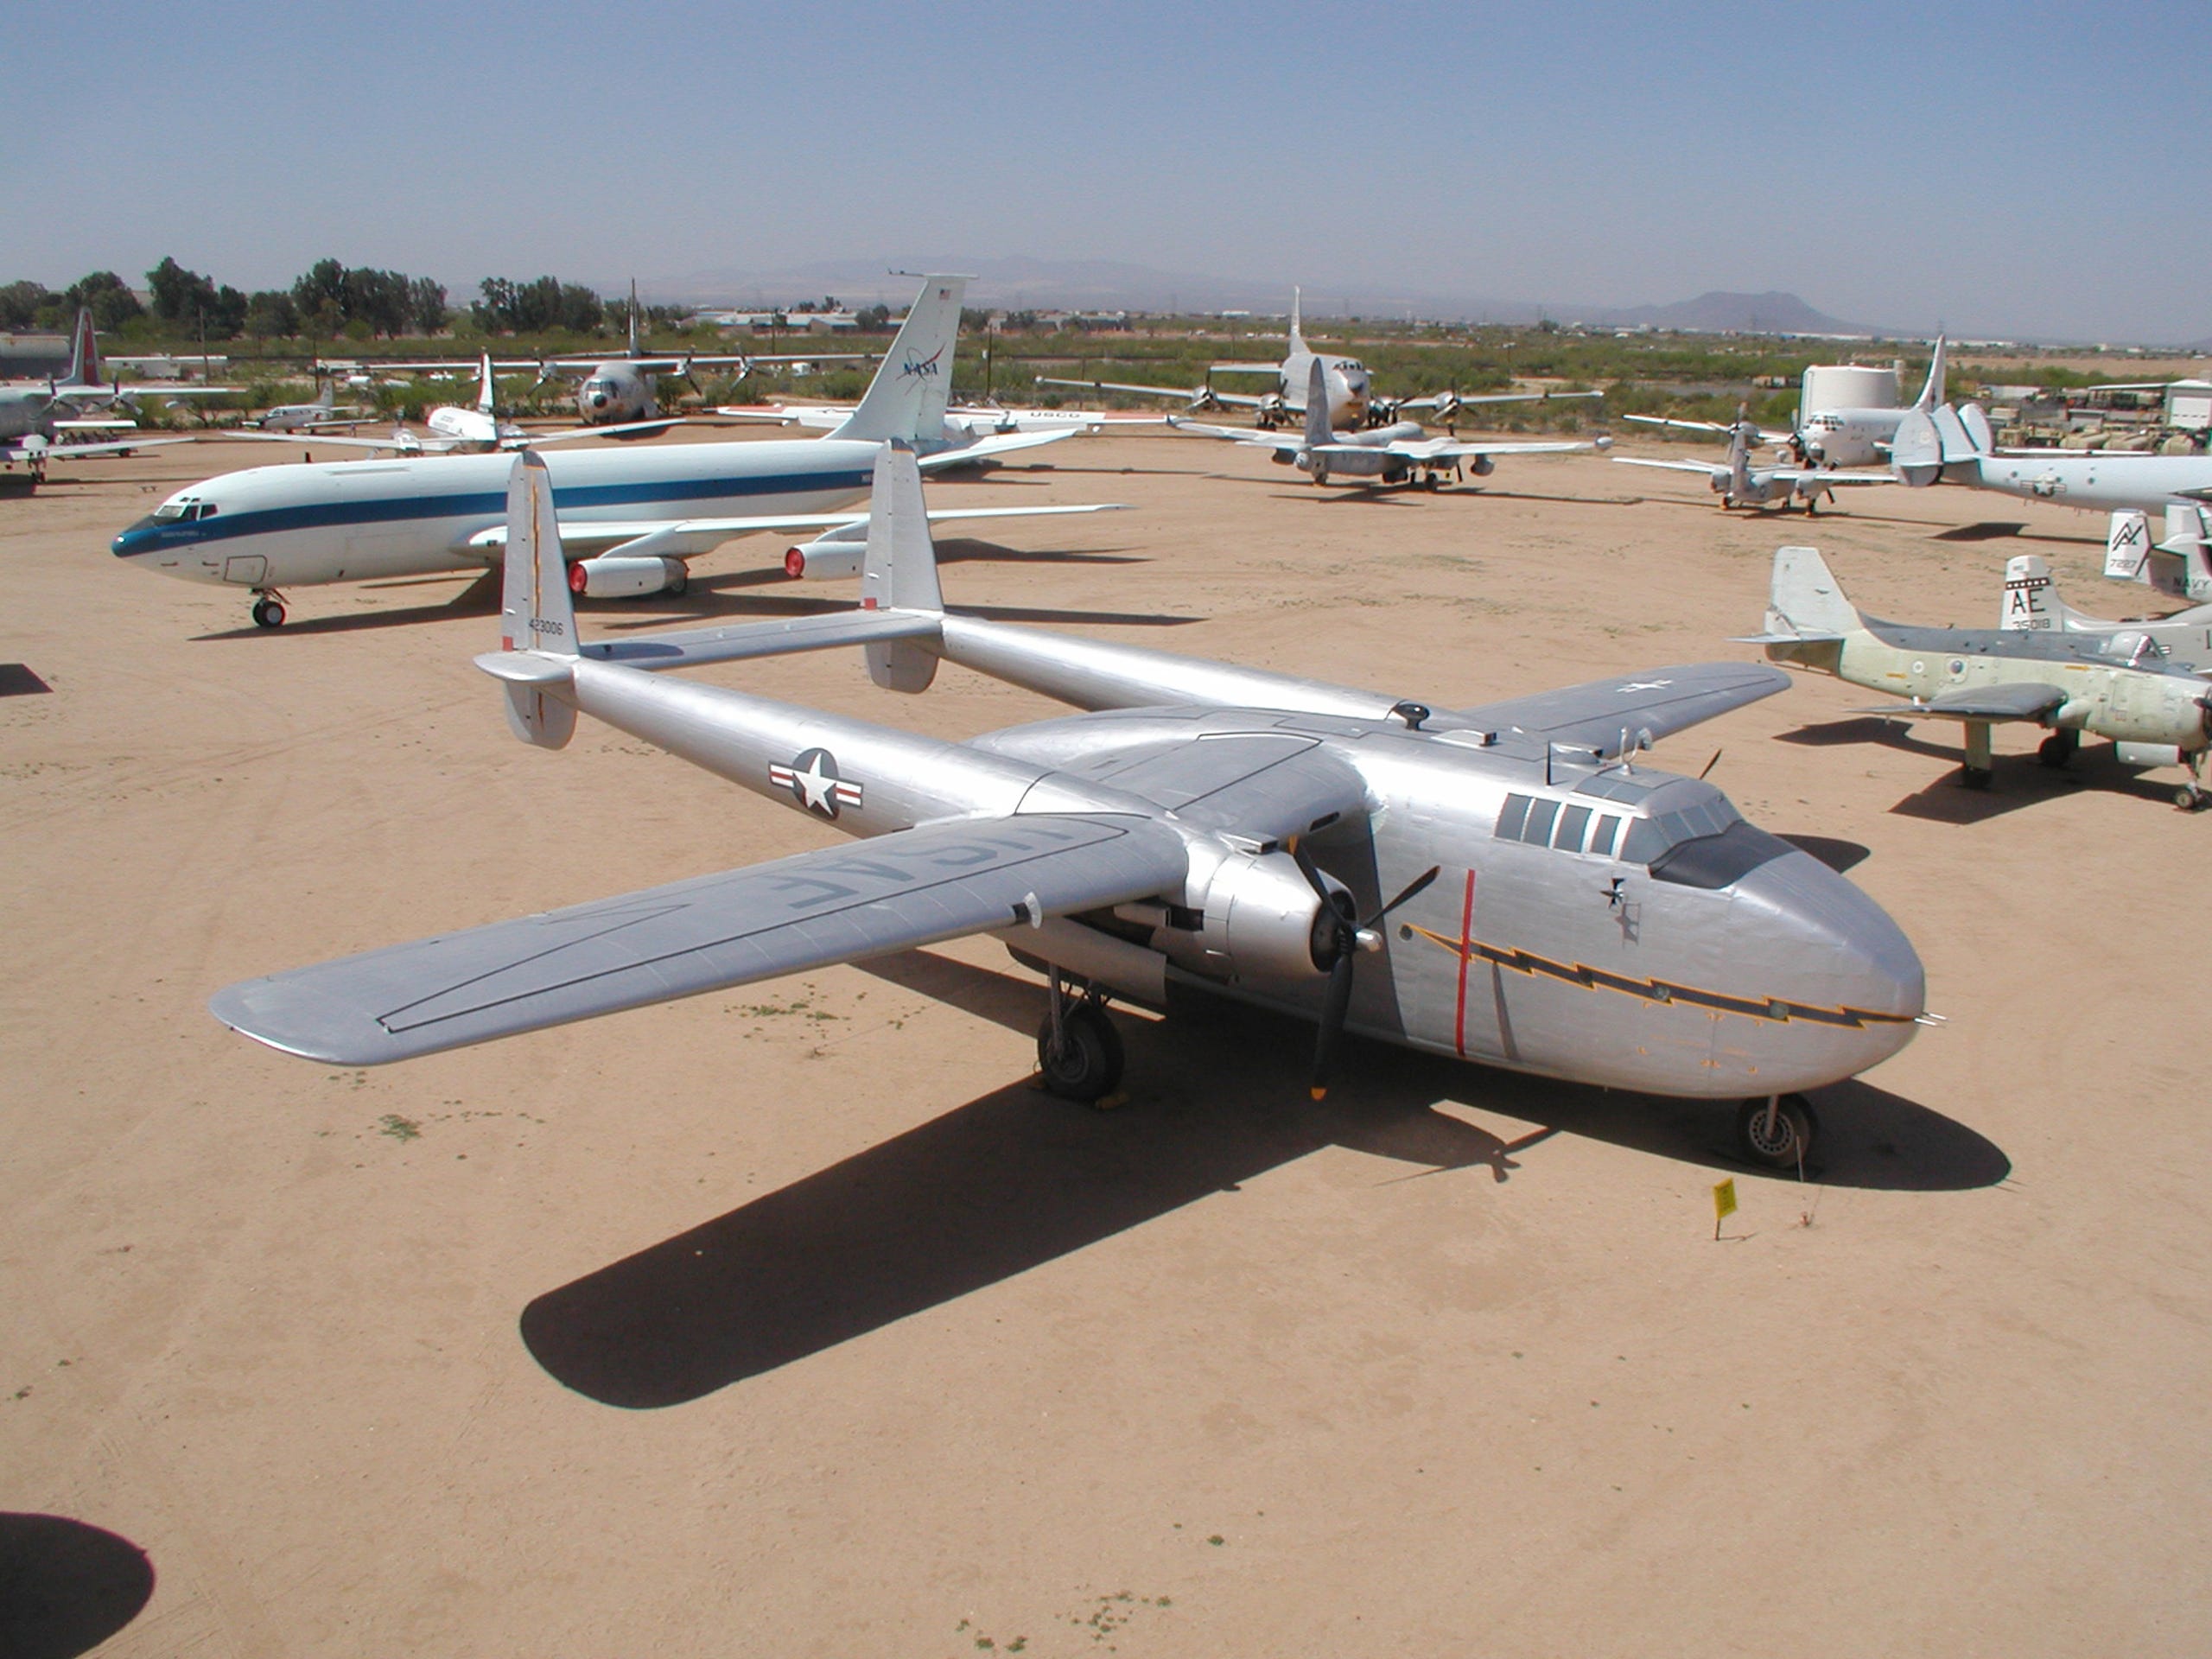 Pima Air & Space Museum of Tucson